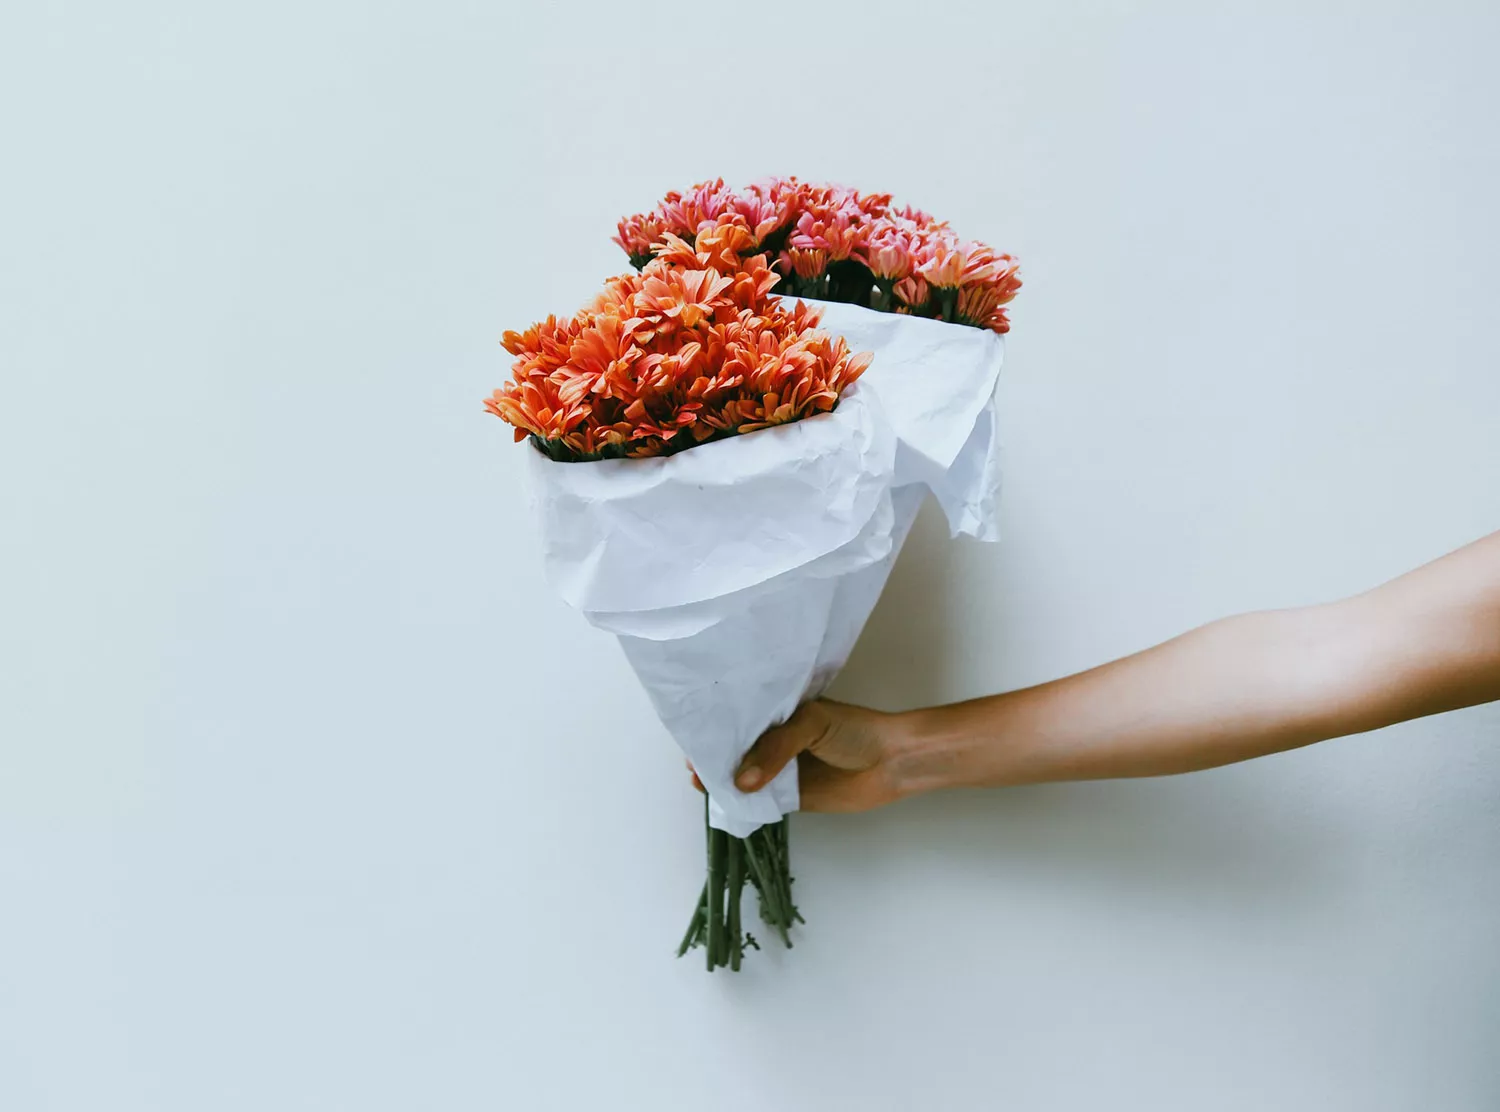 挑選求婚花束也需留意花朵數量也有其意義。